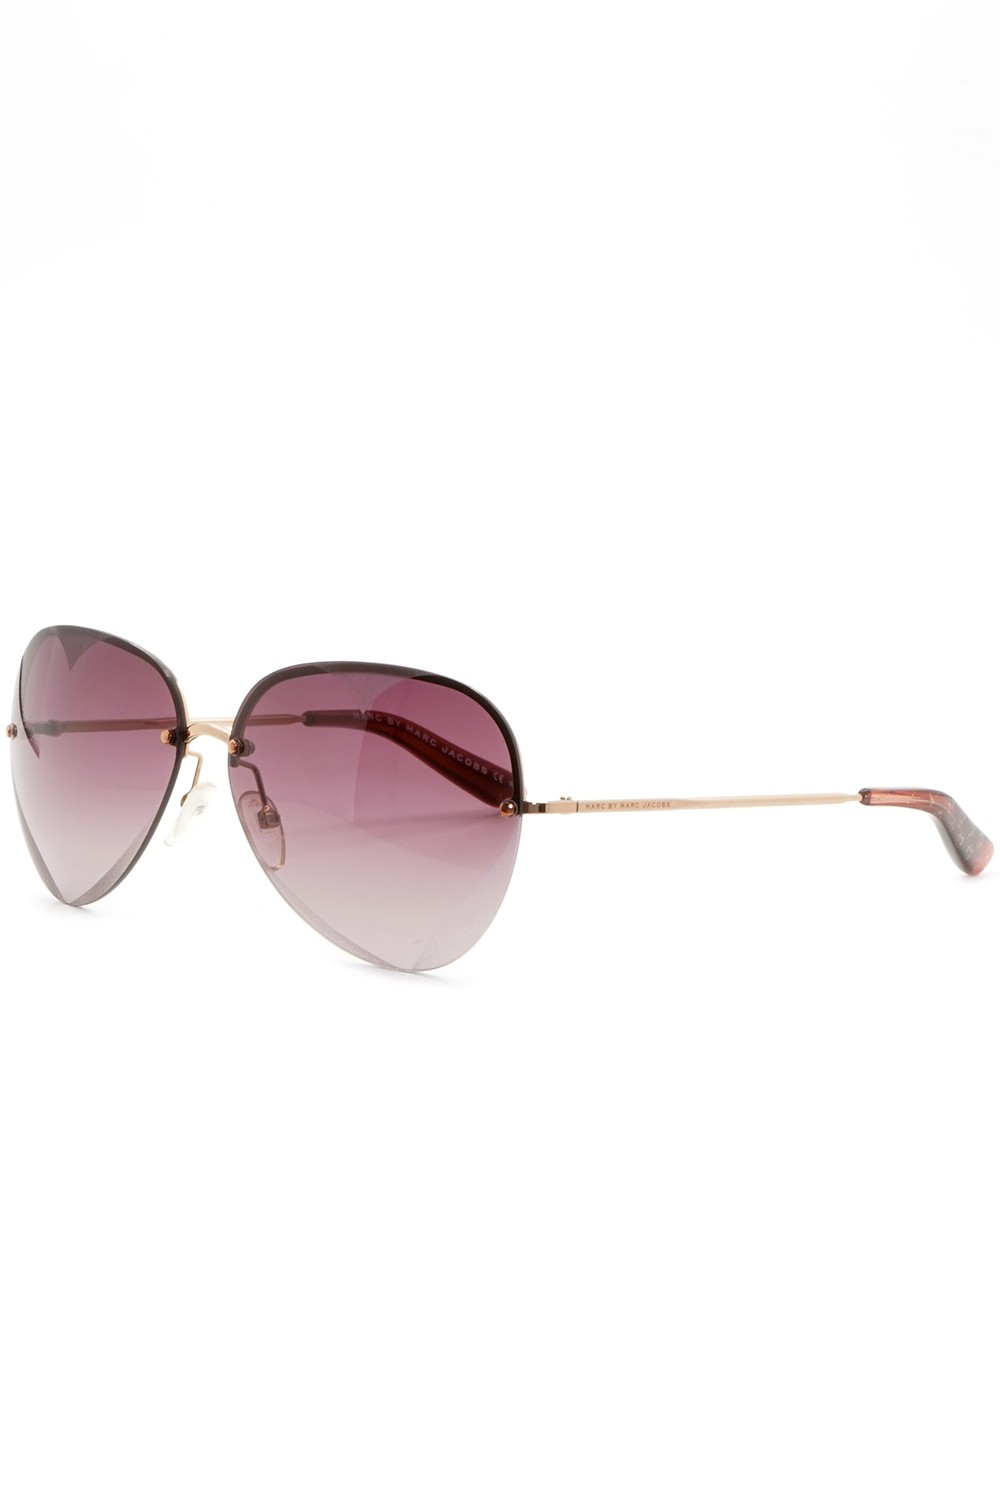 Marc Jacobs - Occhiali da sole in metallo a goccia per donna oro rosa -